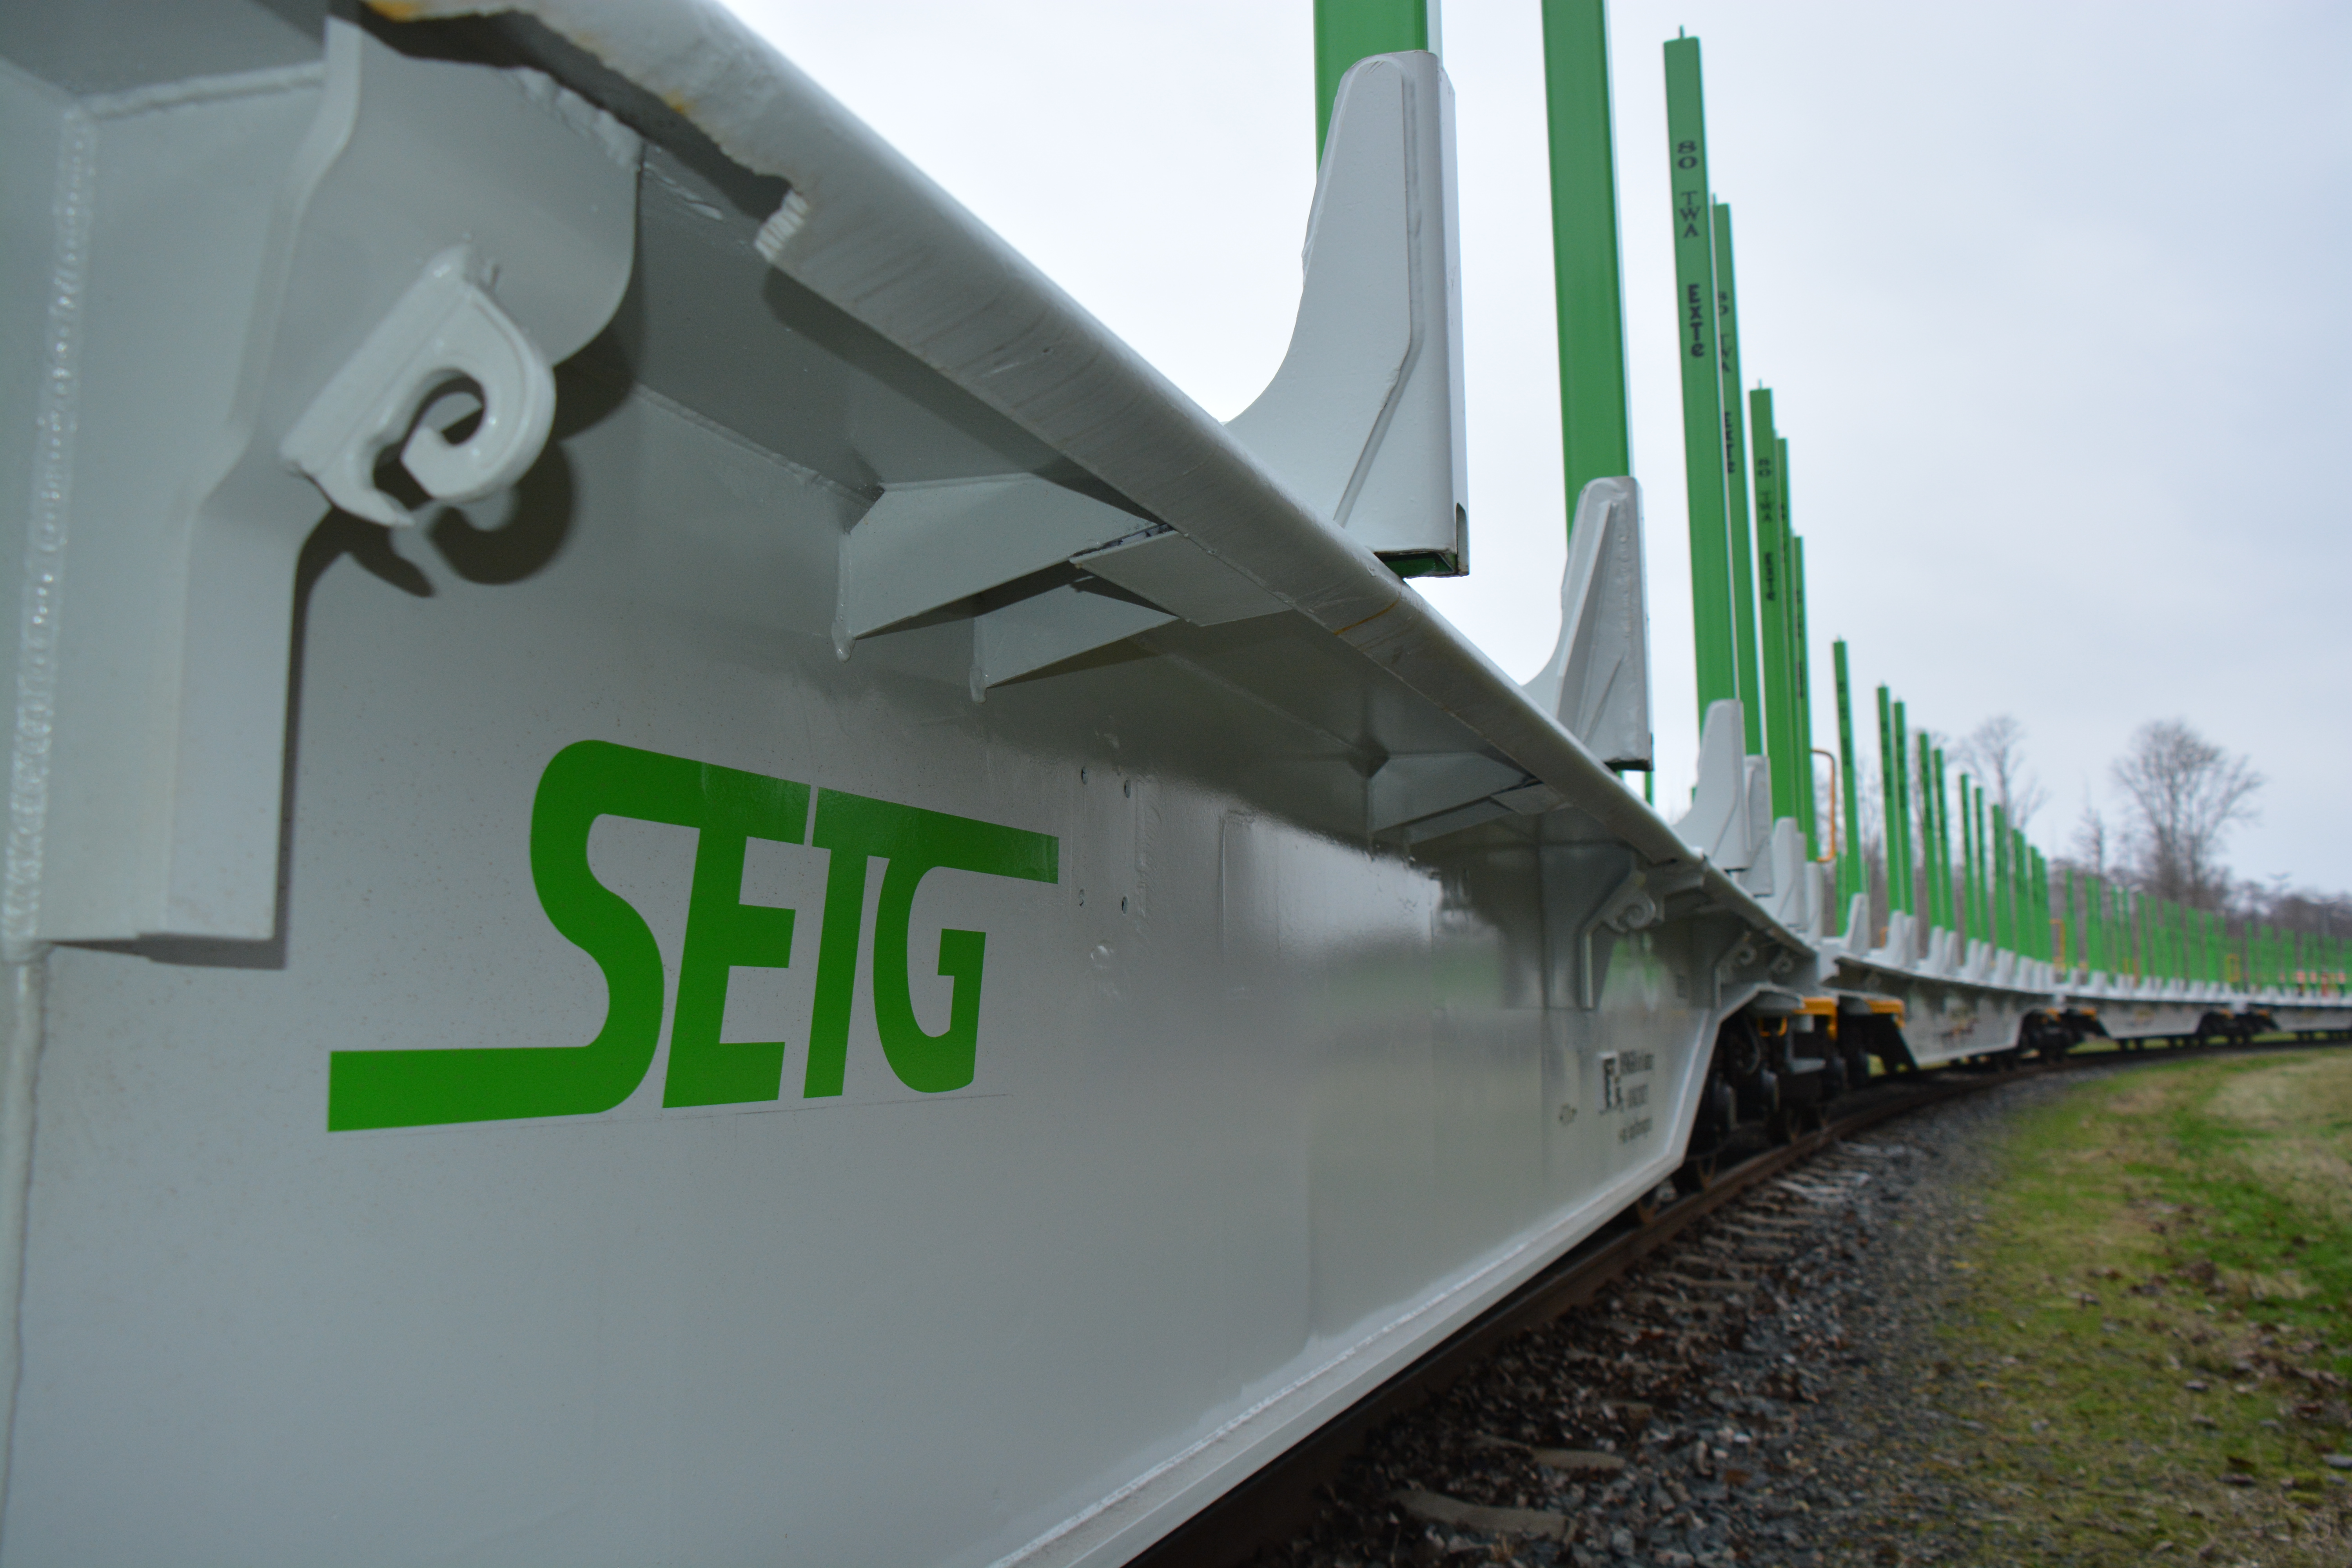 Bahnlogistik-Spezialist SETG wächst auf 65 Mio. Euro Jahresumsatz